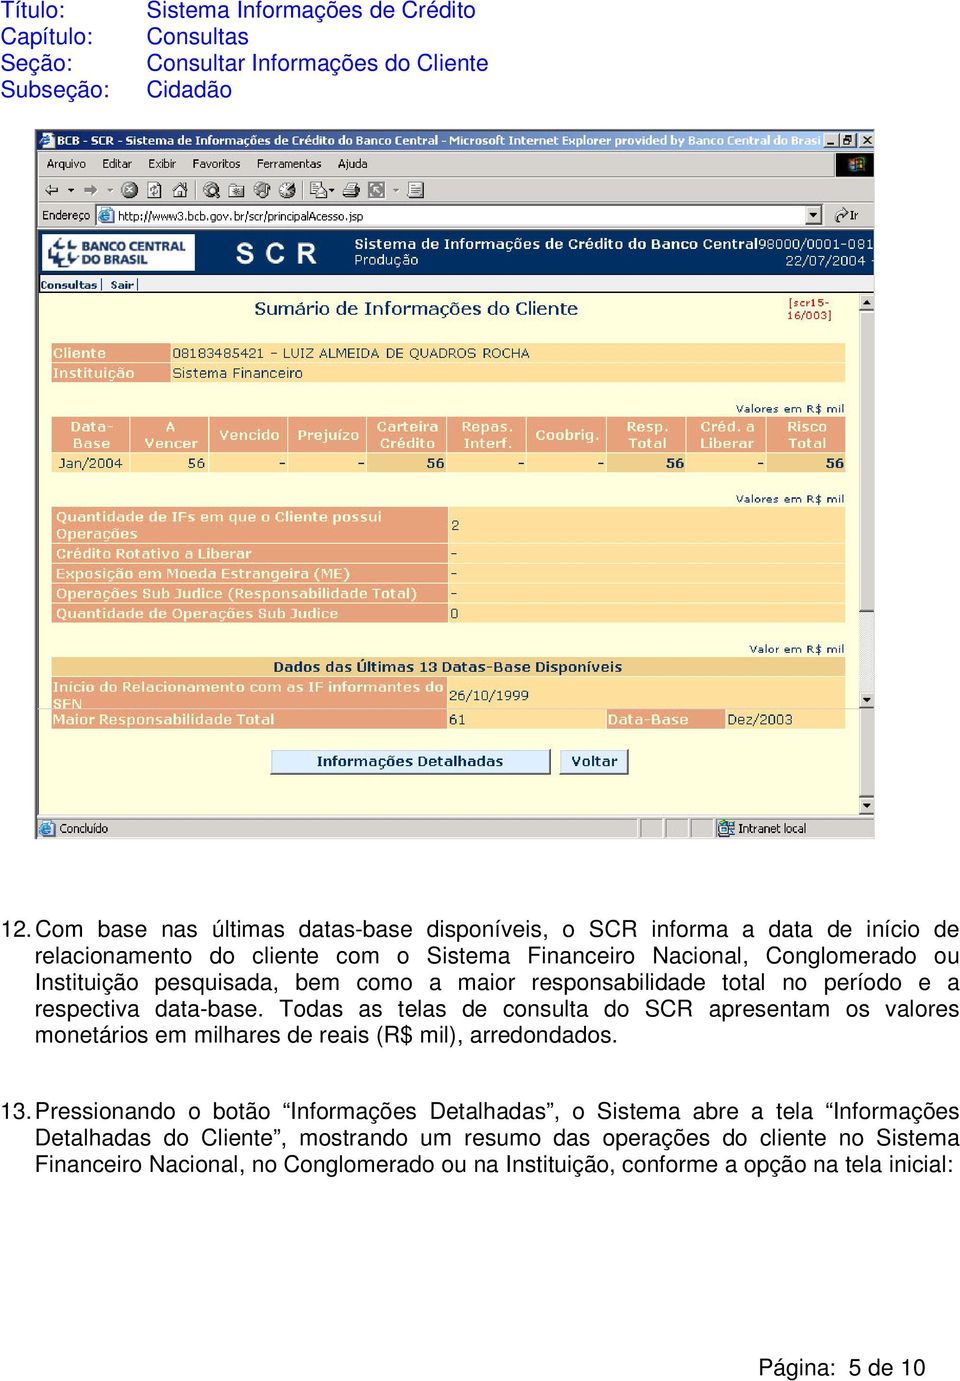 Todas as telas de consulta do SCR apresentam os valores monetários em milhares de reais (R$ mil), arredondados. 13.